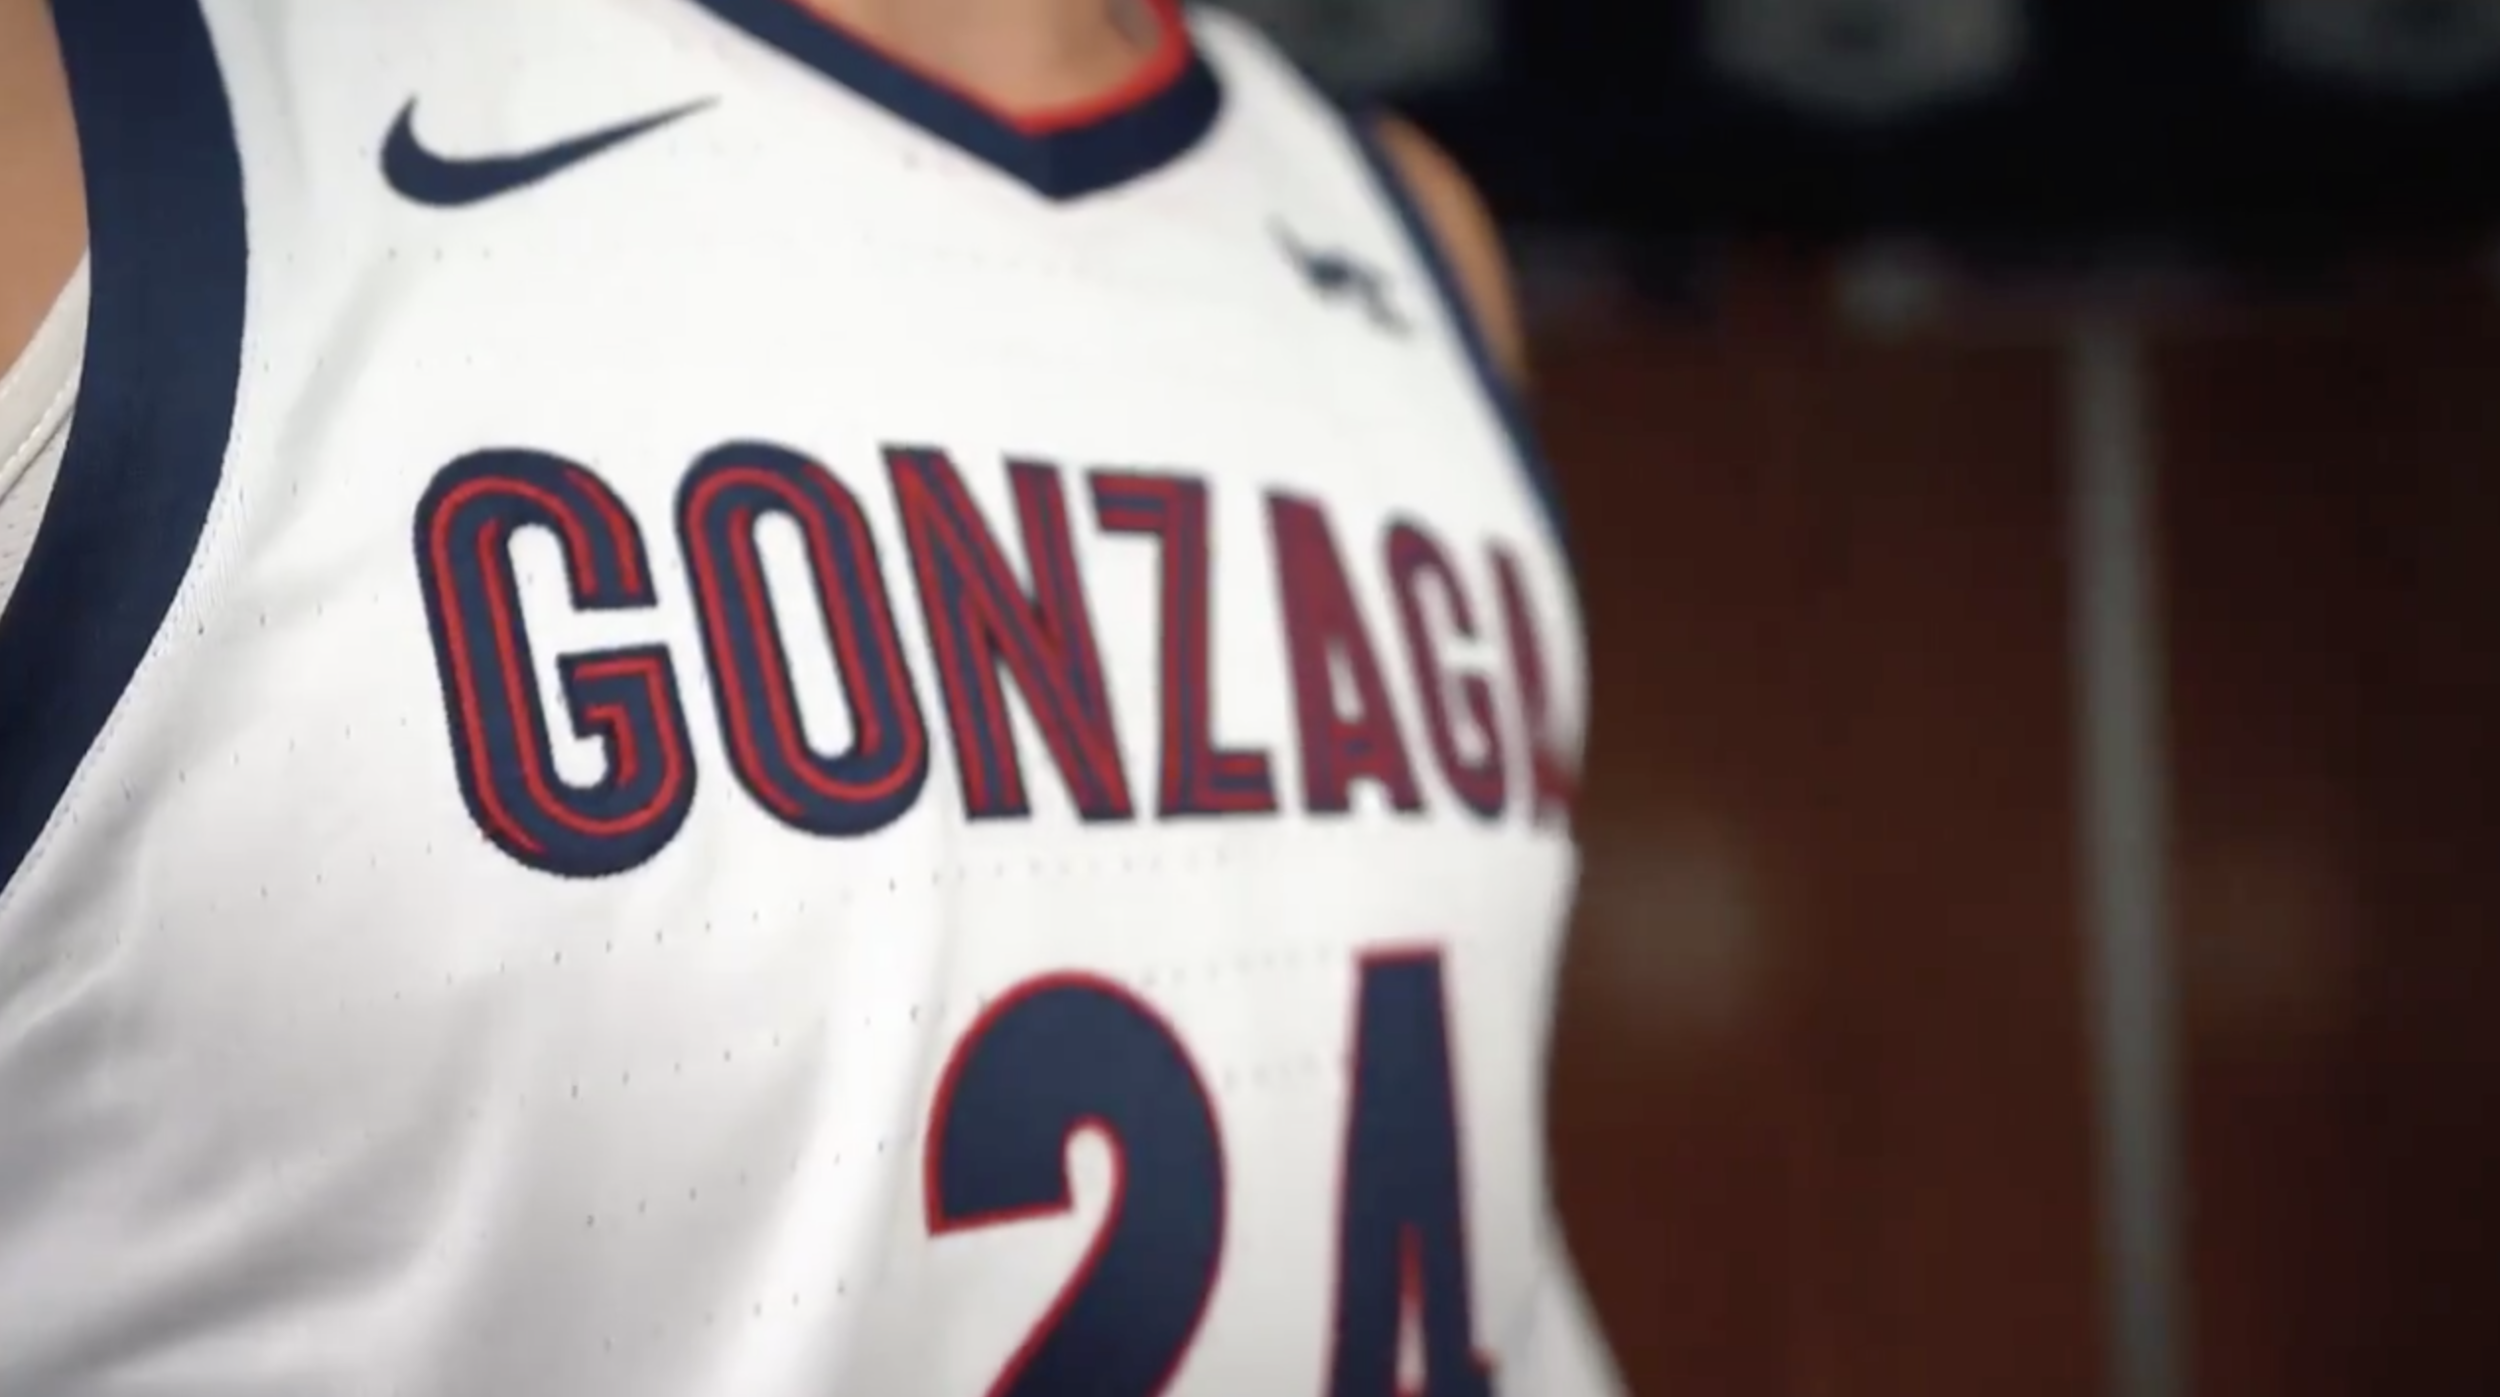 Gonzaga Jerseys, Gonzaga Bulldogs Uniforms